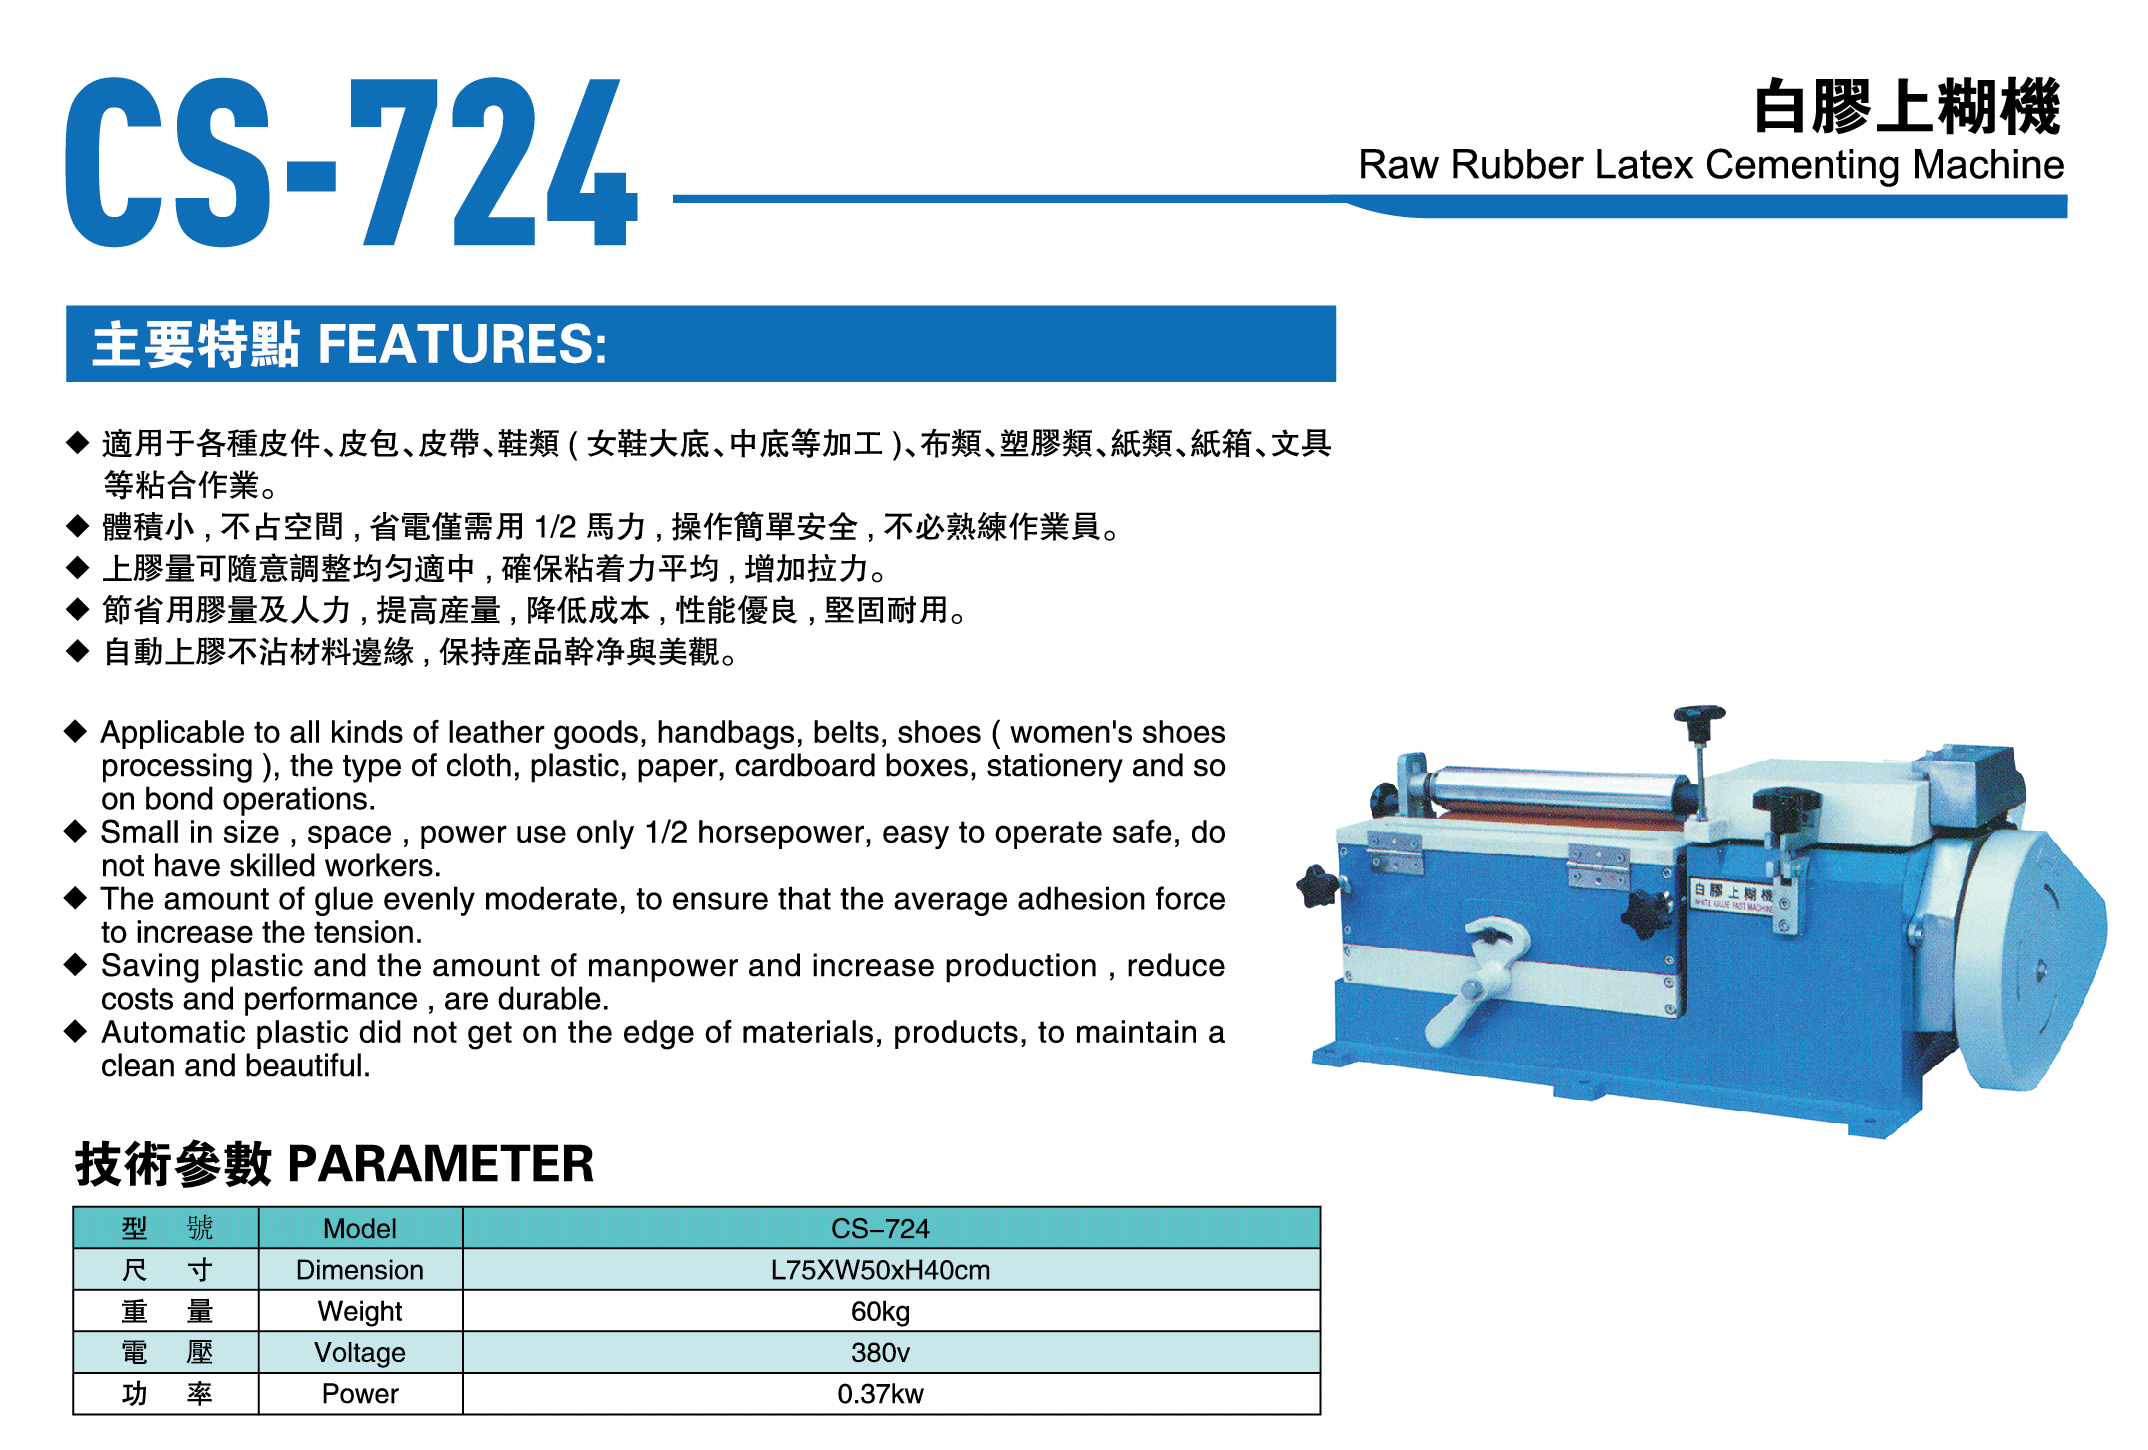 CS-724